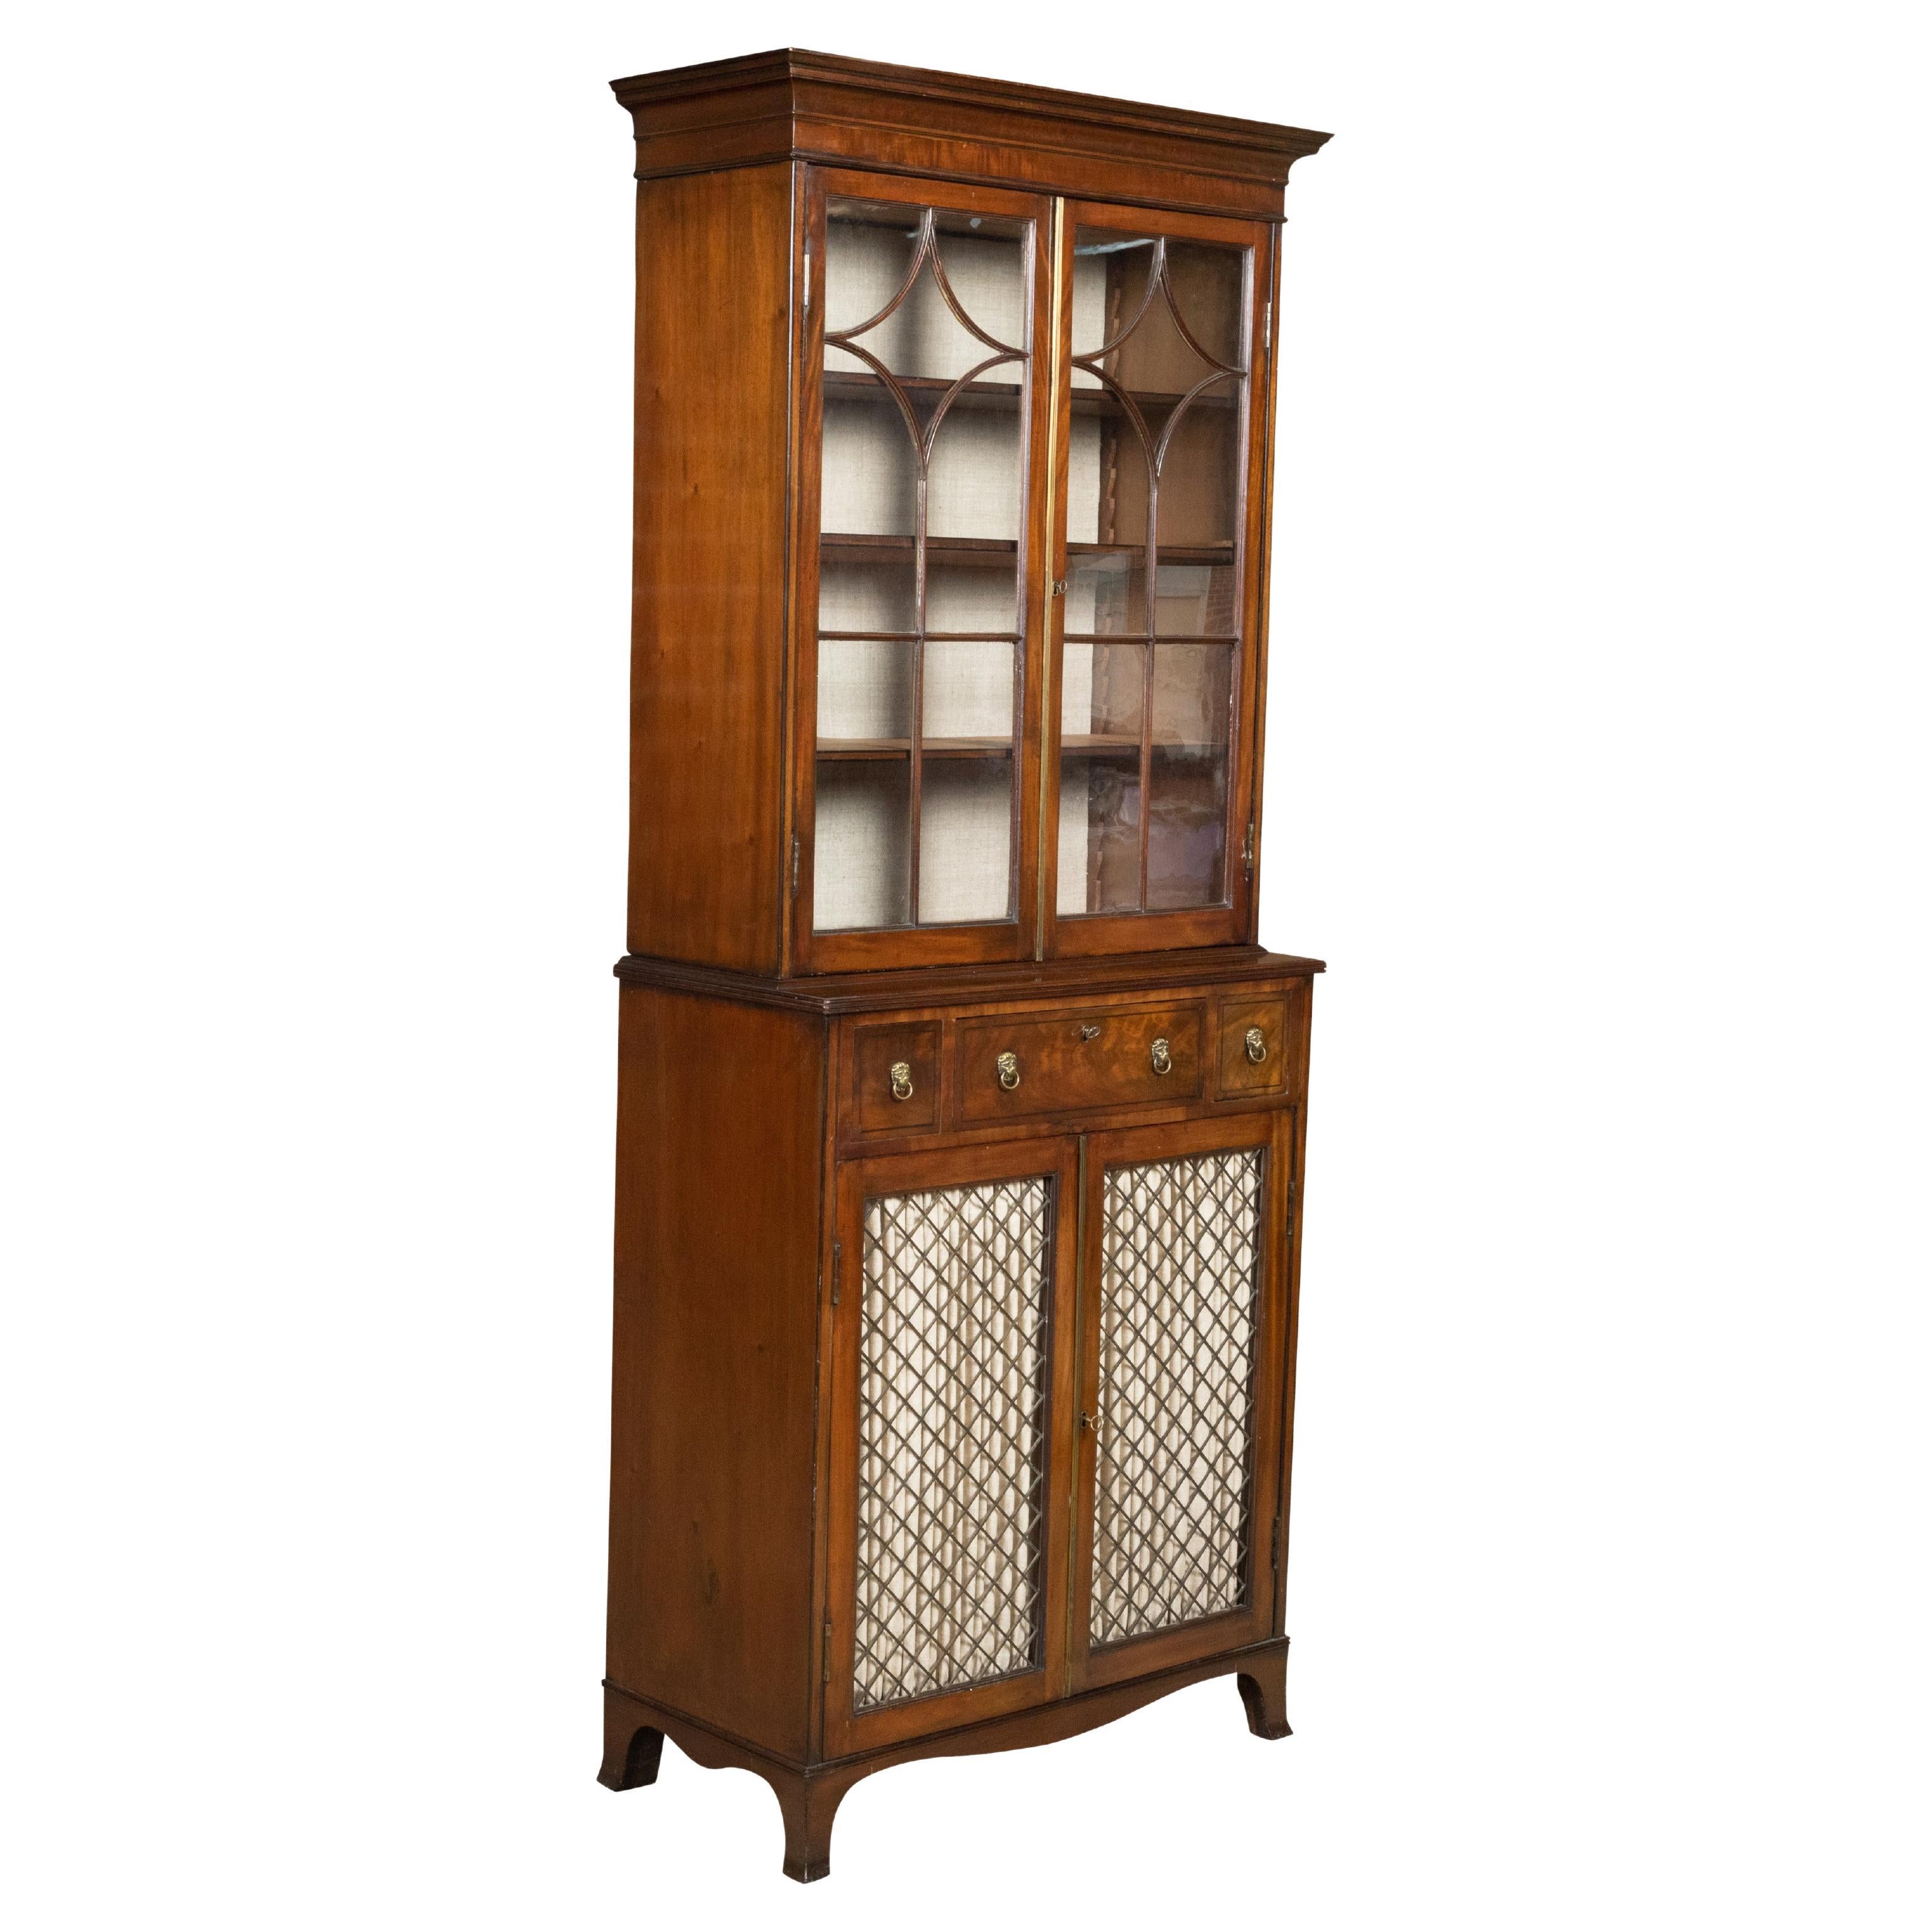 English 1840s Mahogany Veneered Vitrine Cabinet with Glass Doors and Drawers